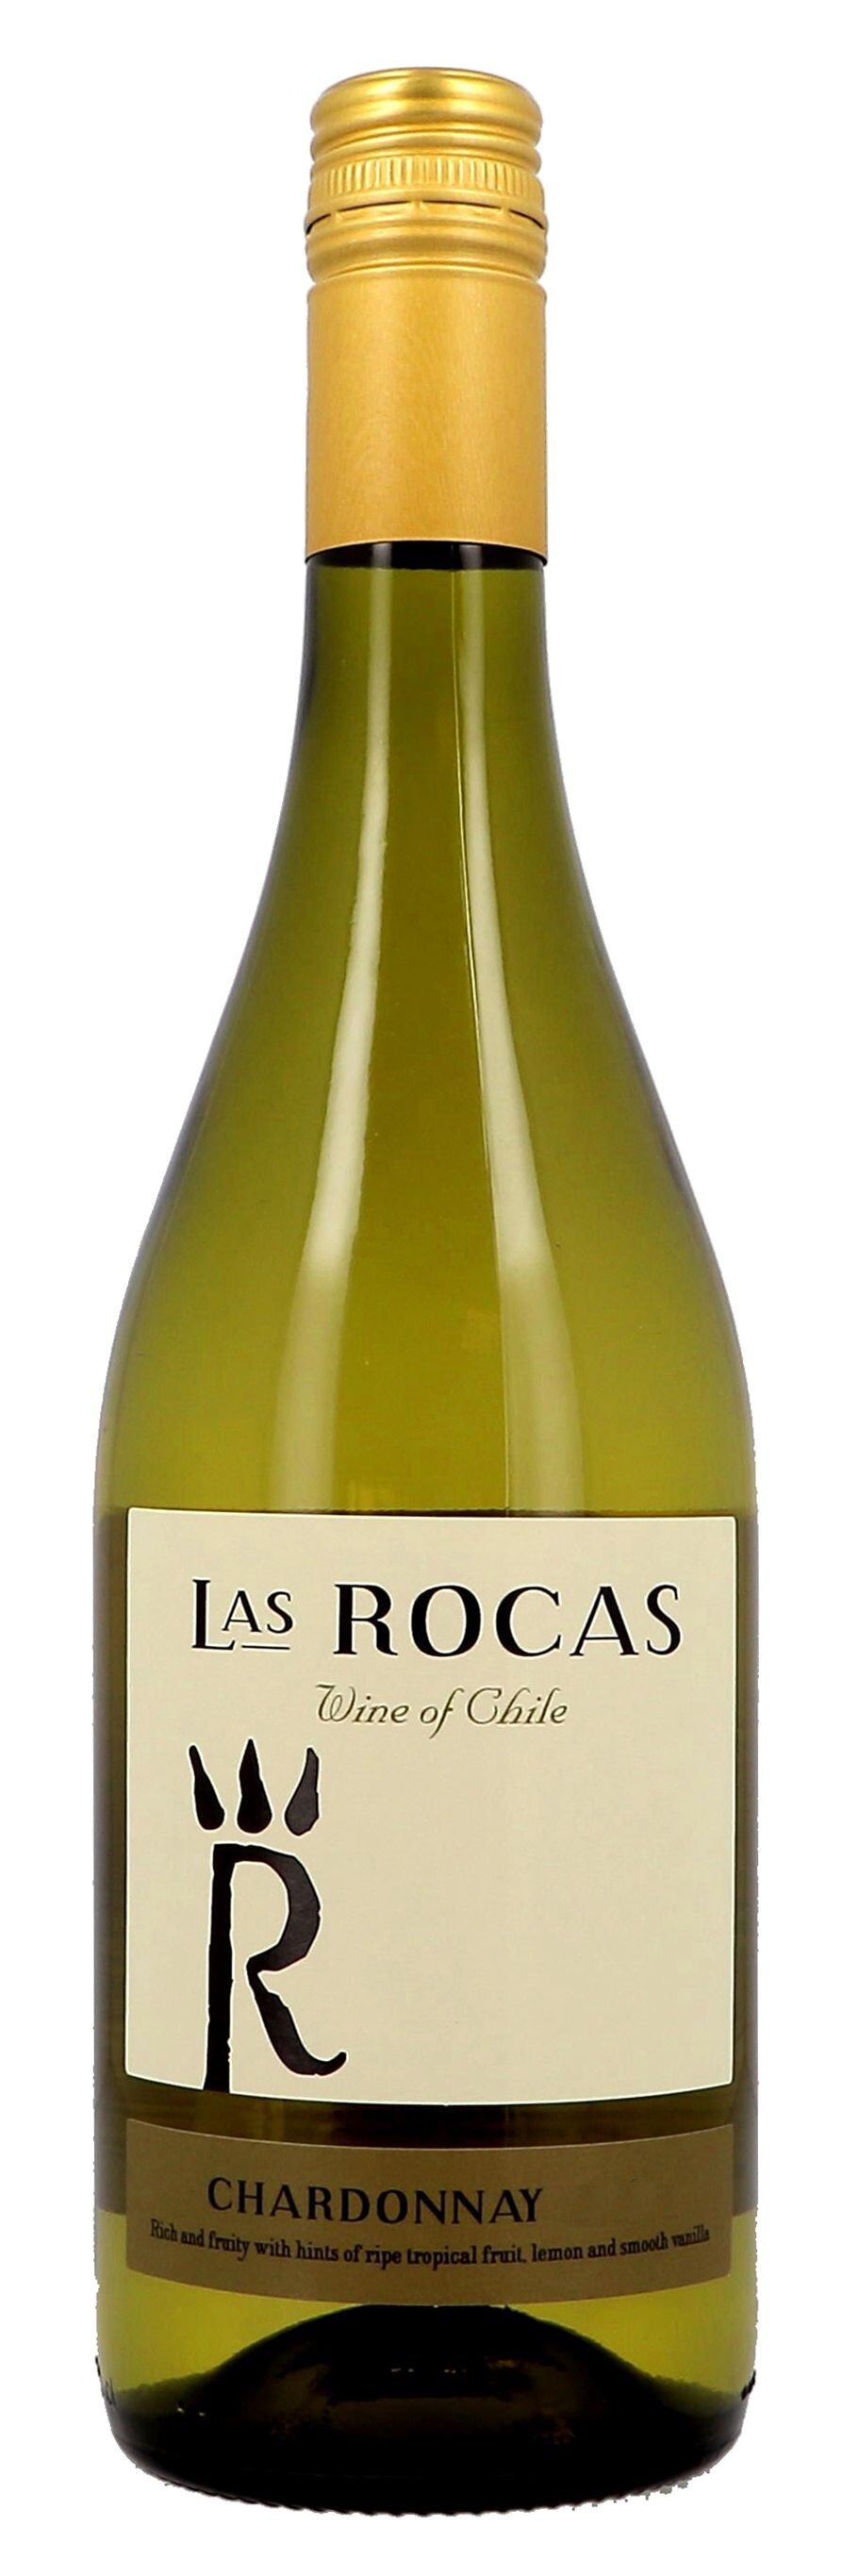 Las Rocas Chardonnay 75cl 2018 Central Valley - Chili (Wijnen)